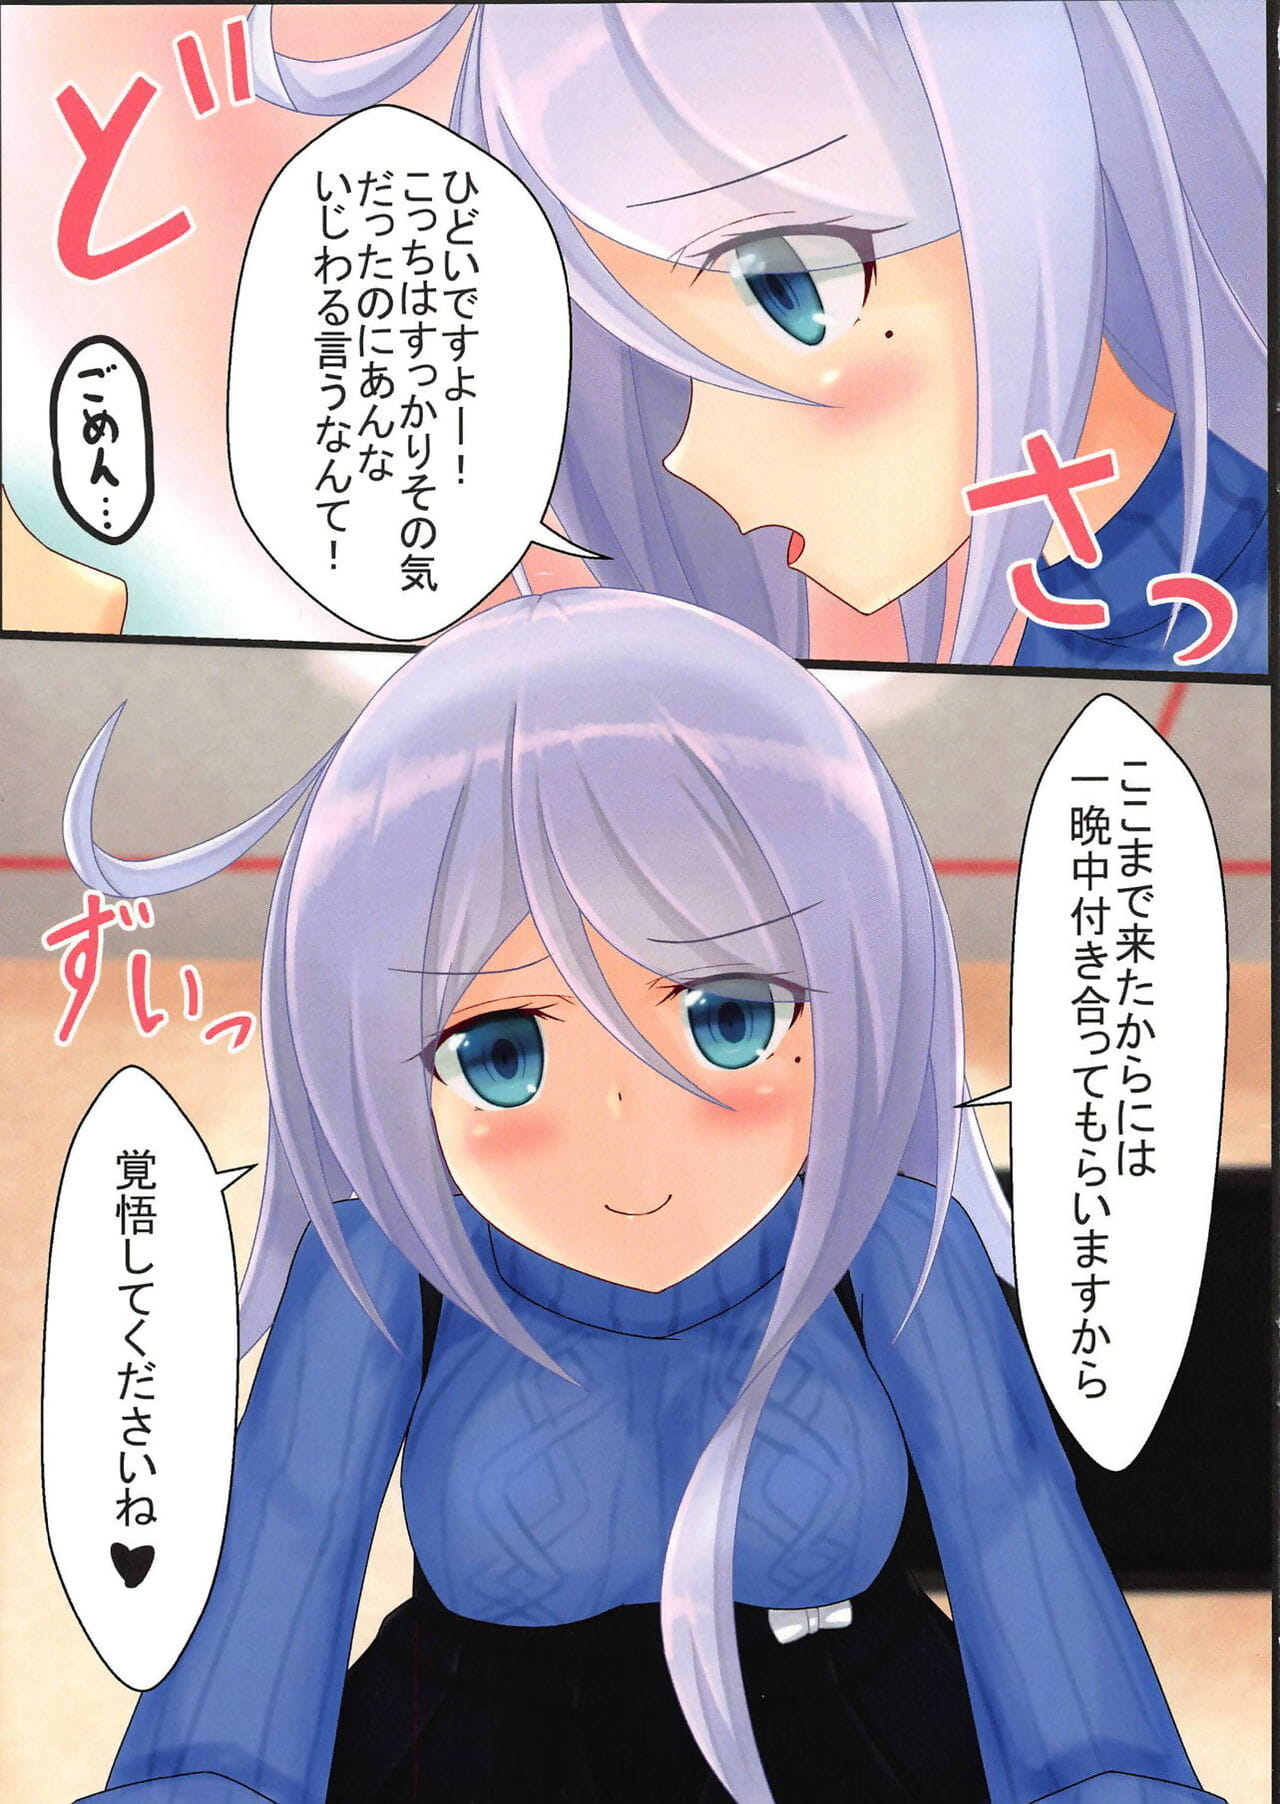 Umikaze-chan Aggressive! page 1